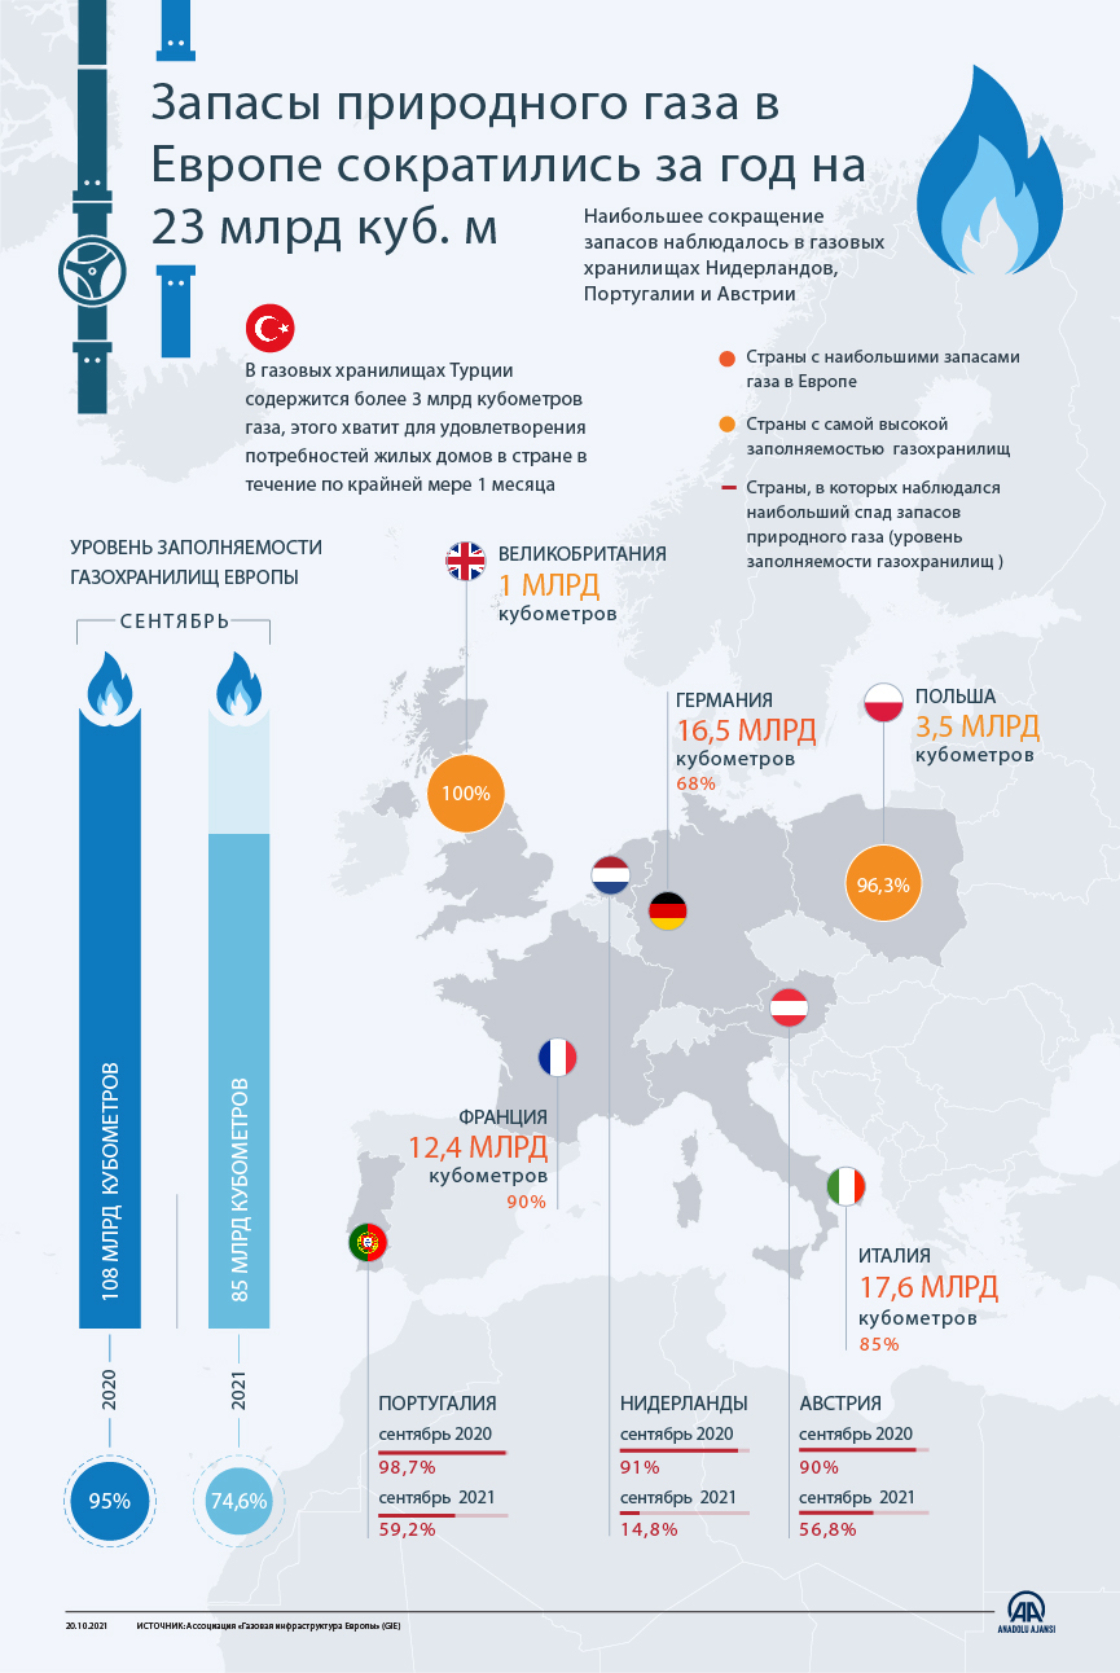 Запасы газа в Европе сократились за год на 23 млрд куб. м